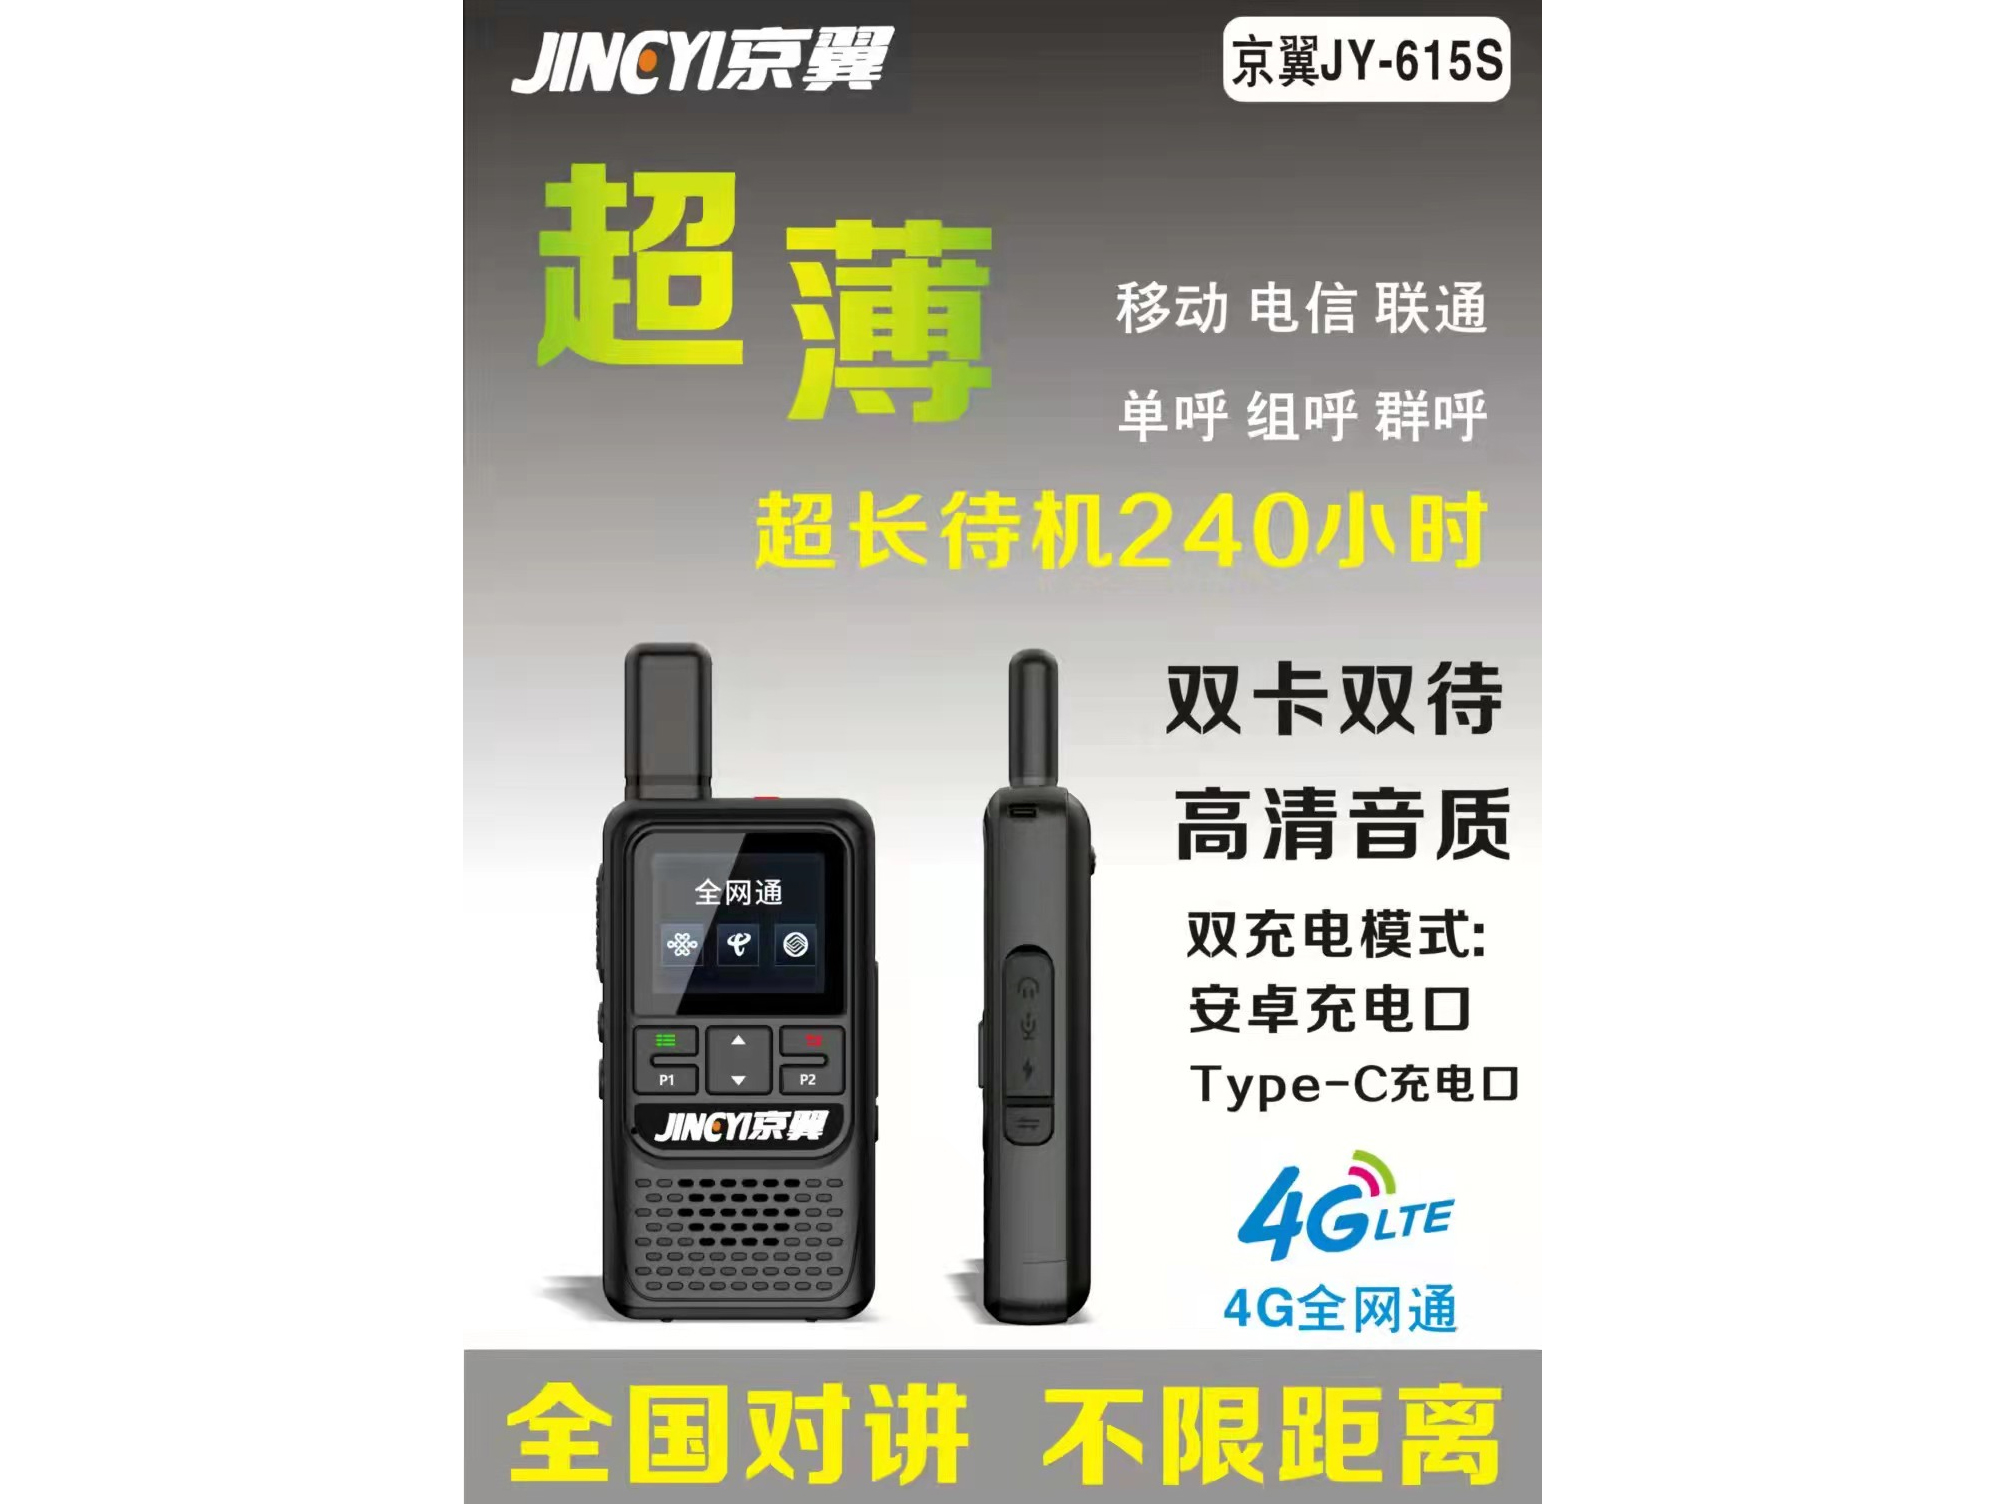 京翼 JY-615S 超薄 4G全网通 全国对讲 不限距离